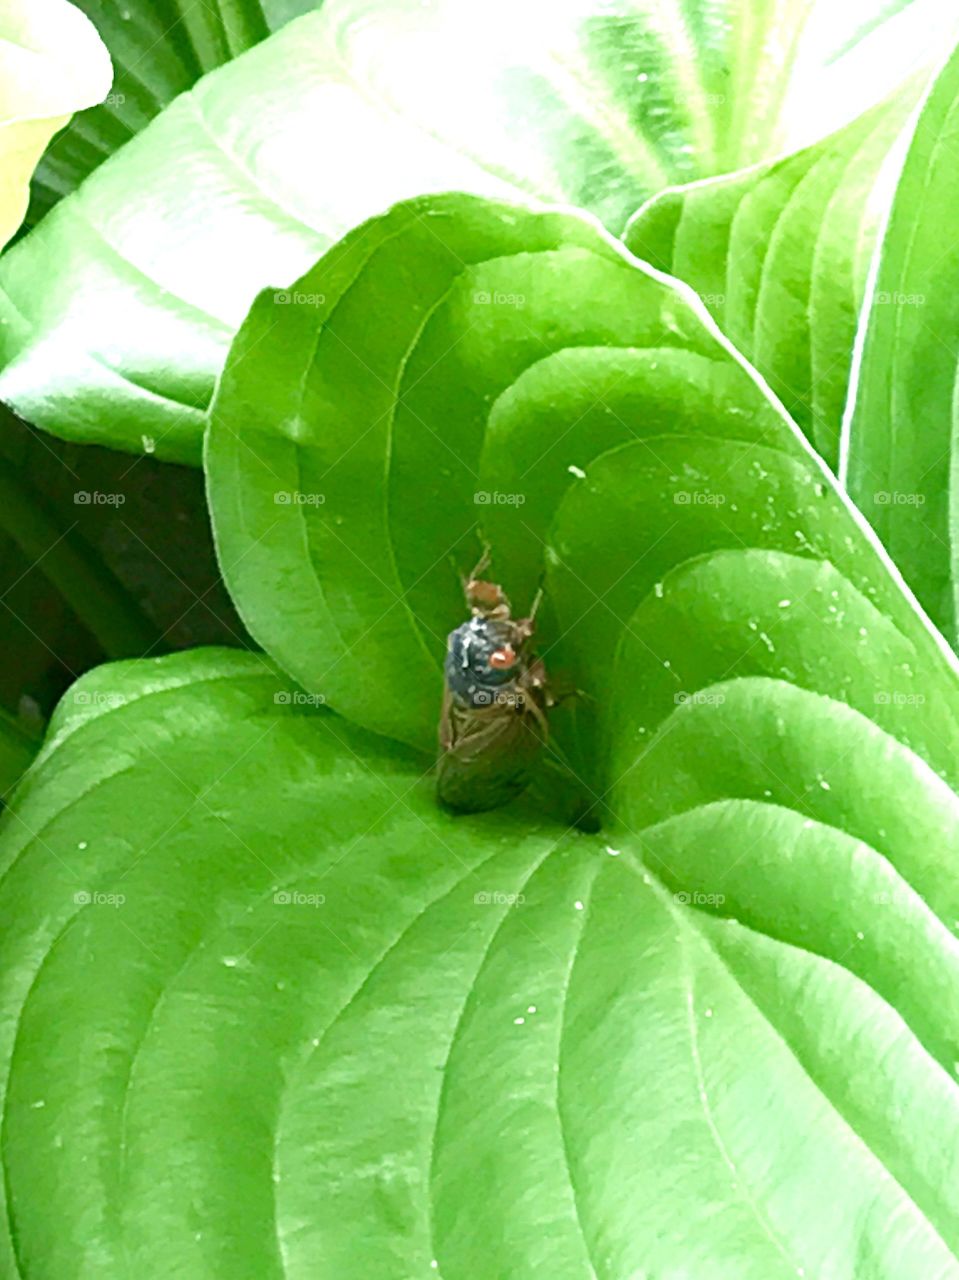 Cicada in hosta leaf